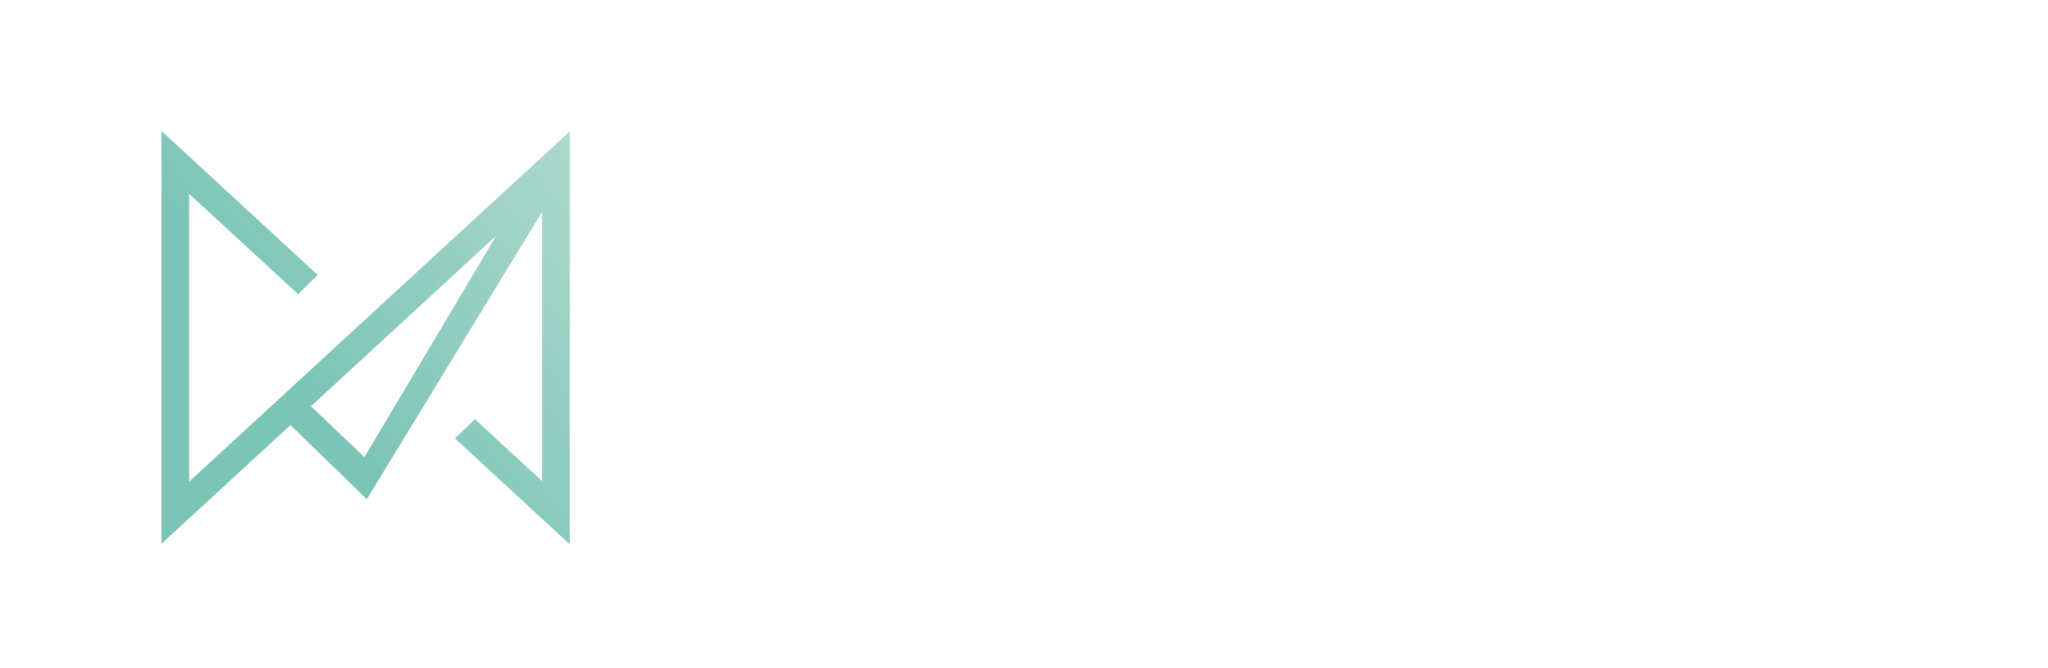 Manifesto Marketing